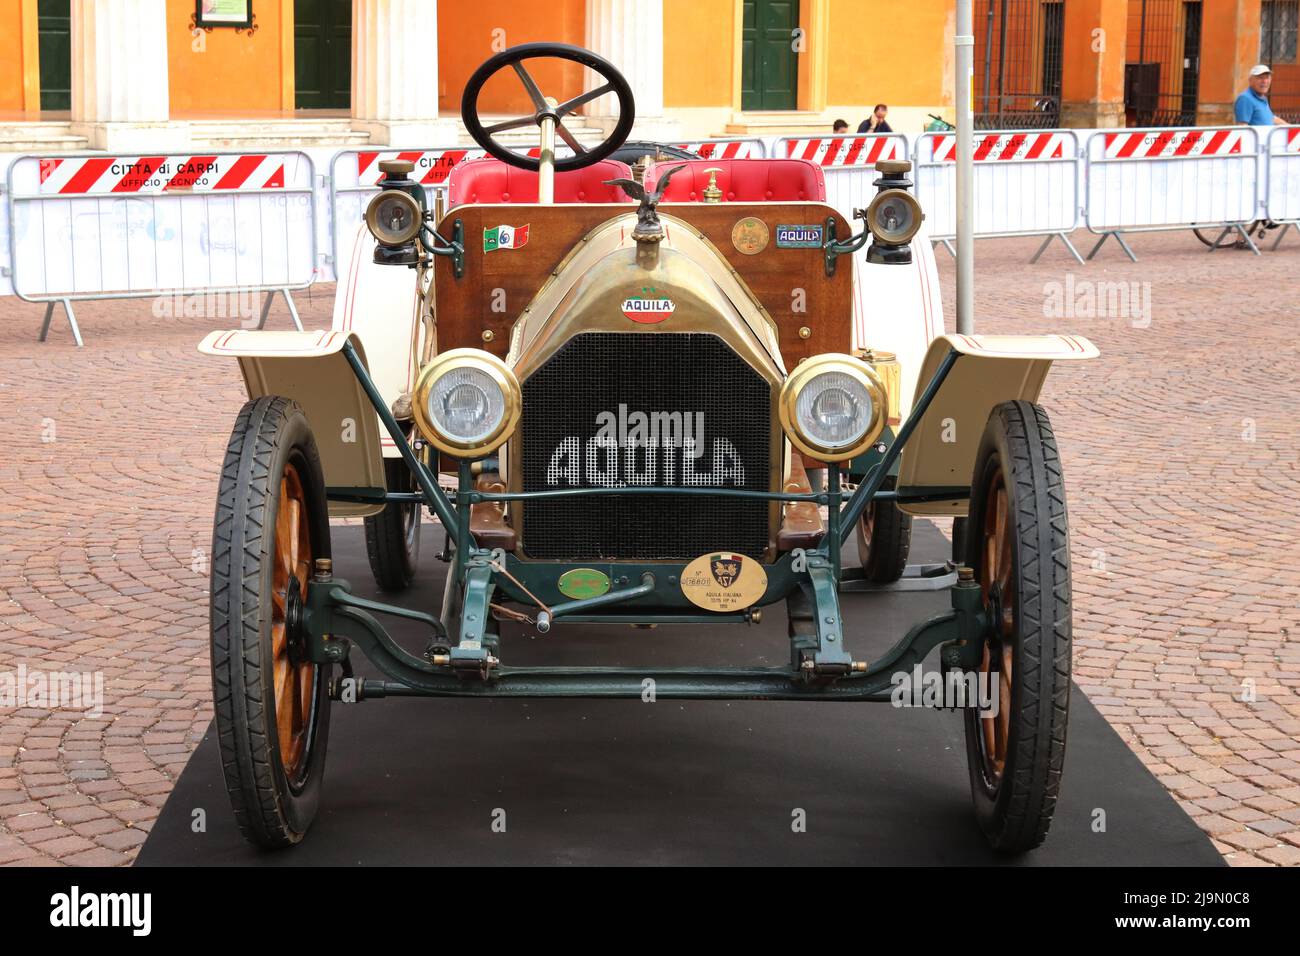 Carpi (Modena) Italy, 2022 maggio, vista frontale di un'antica vettura italiana Aquila del 1910, una classica vettura da collezione d'epoca Foto Stock